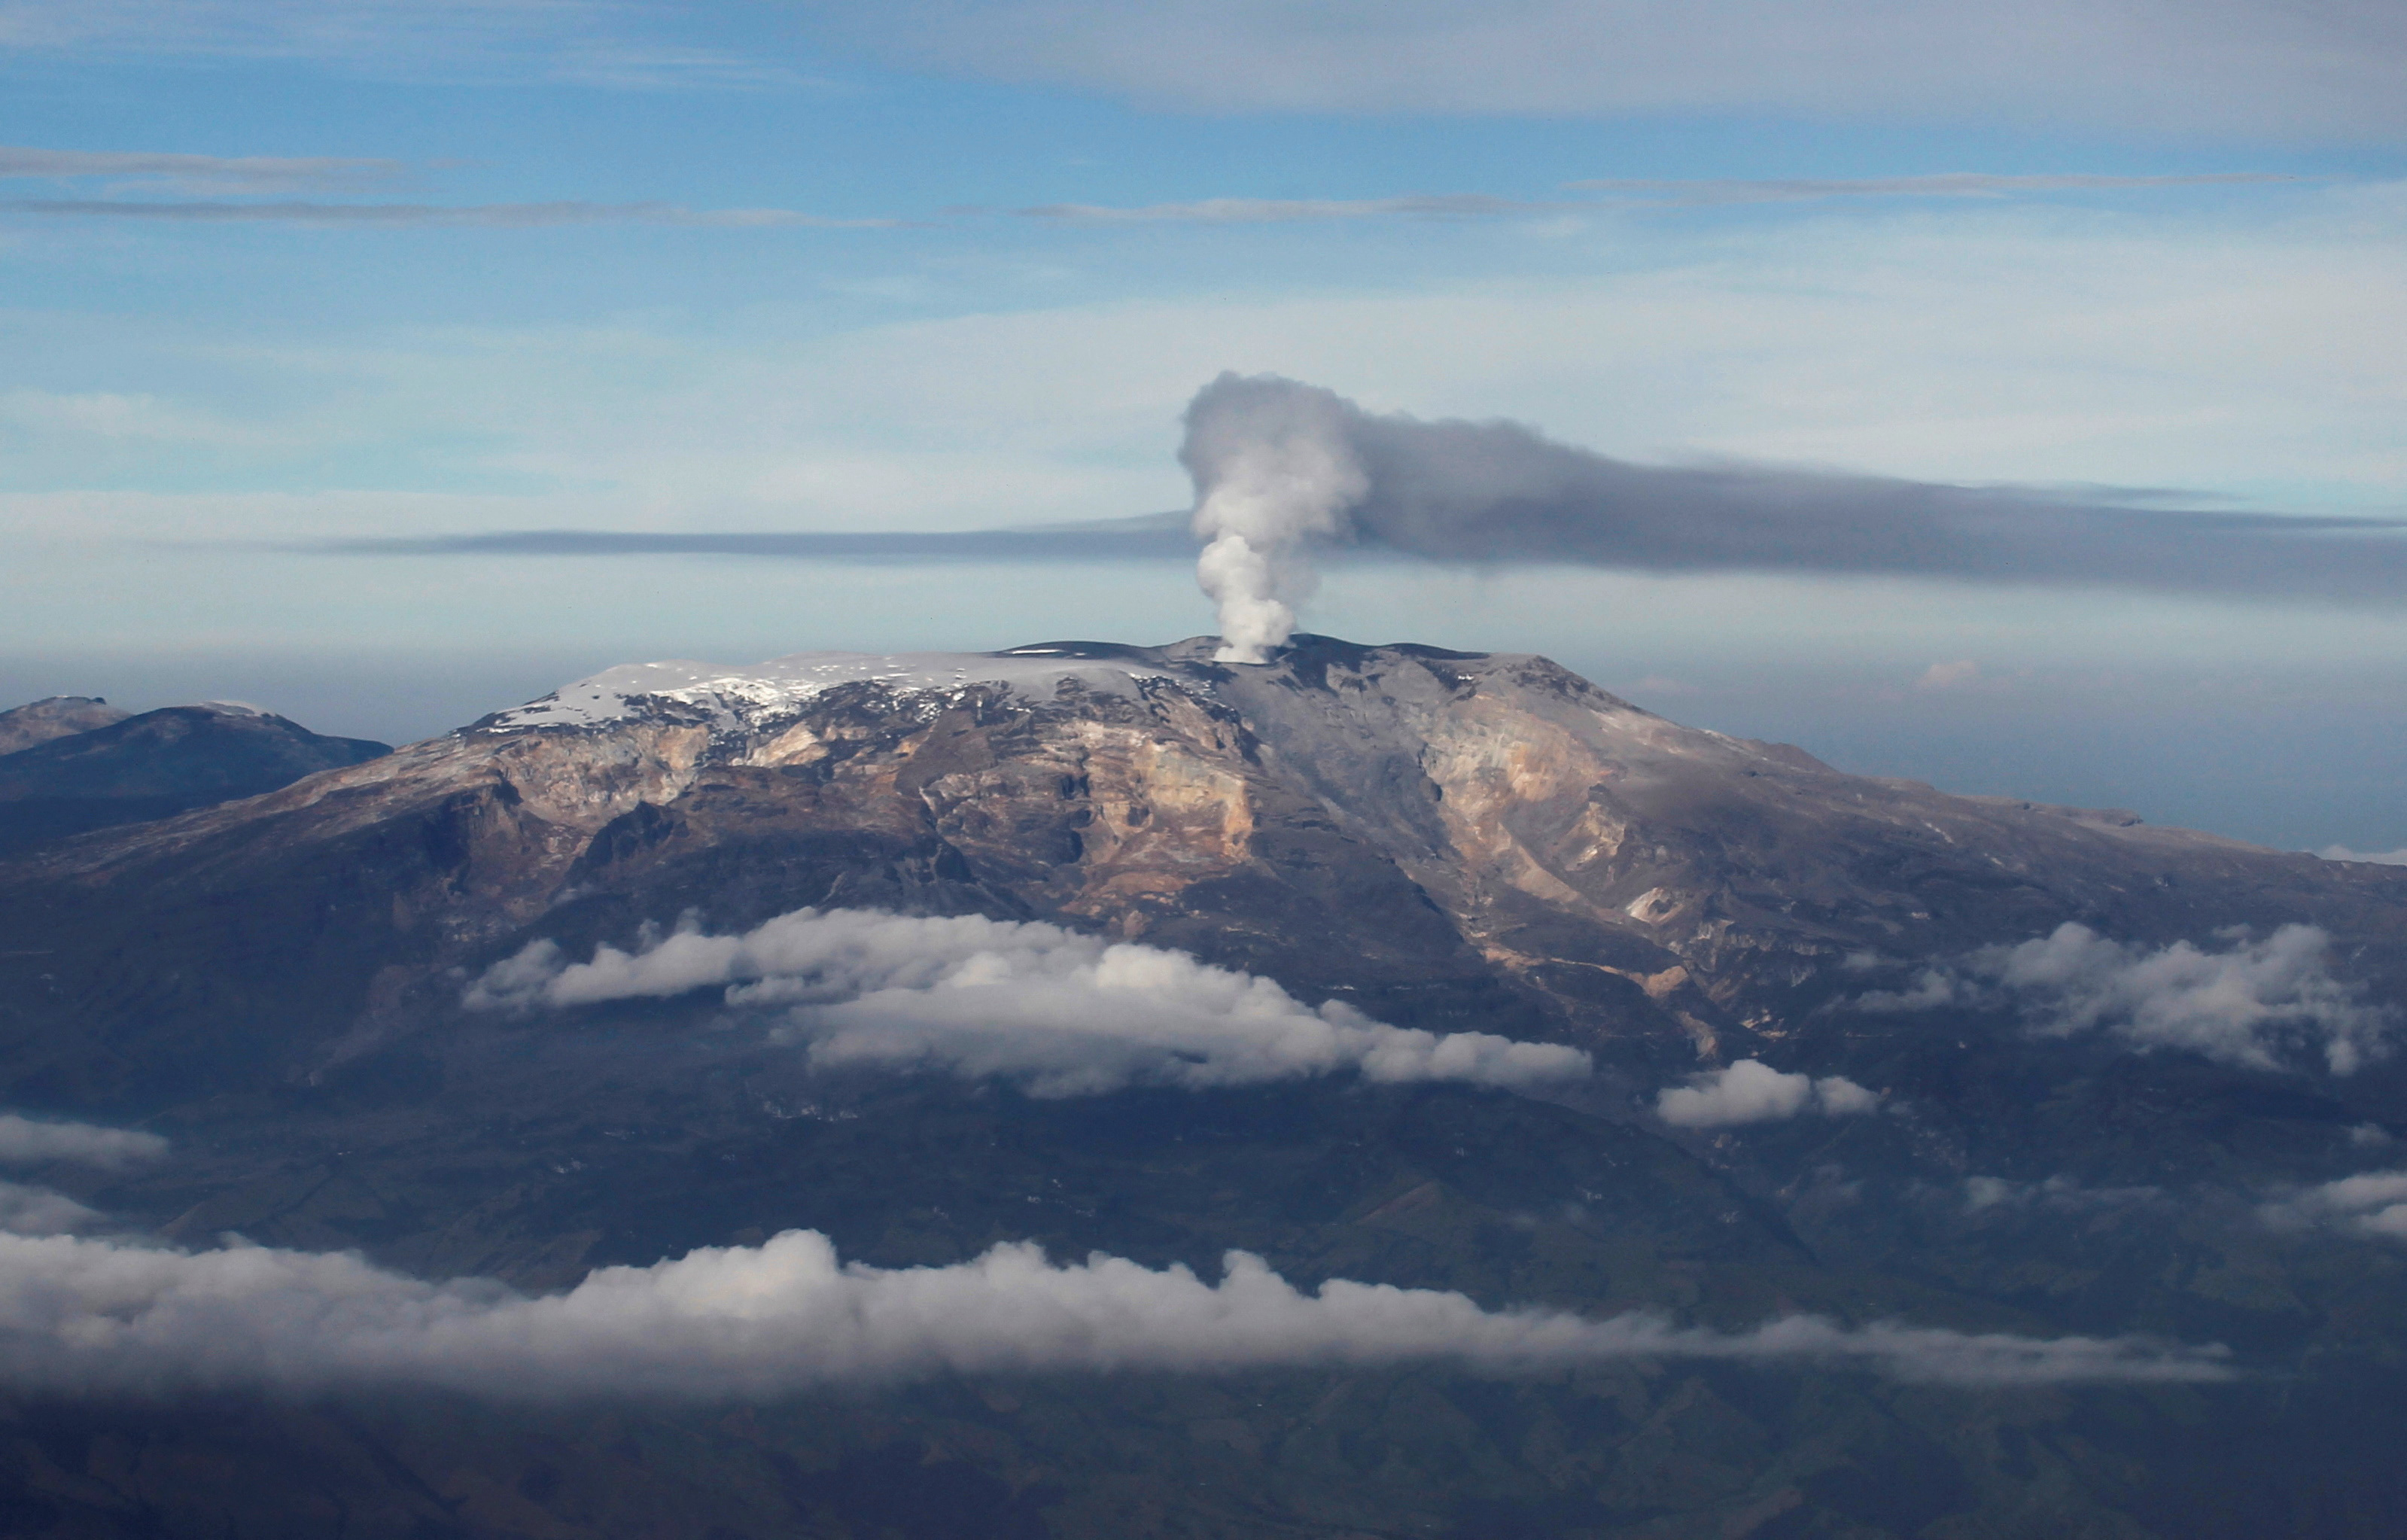 Cierre total del Parque Nacional Los Nevados ante emergencia de erupción del volcán Nevado del Ruiz